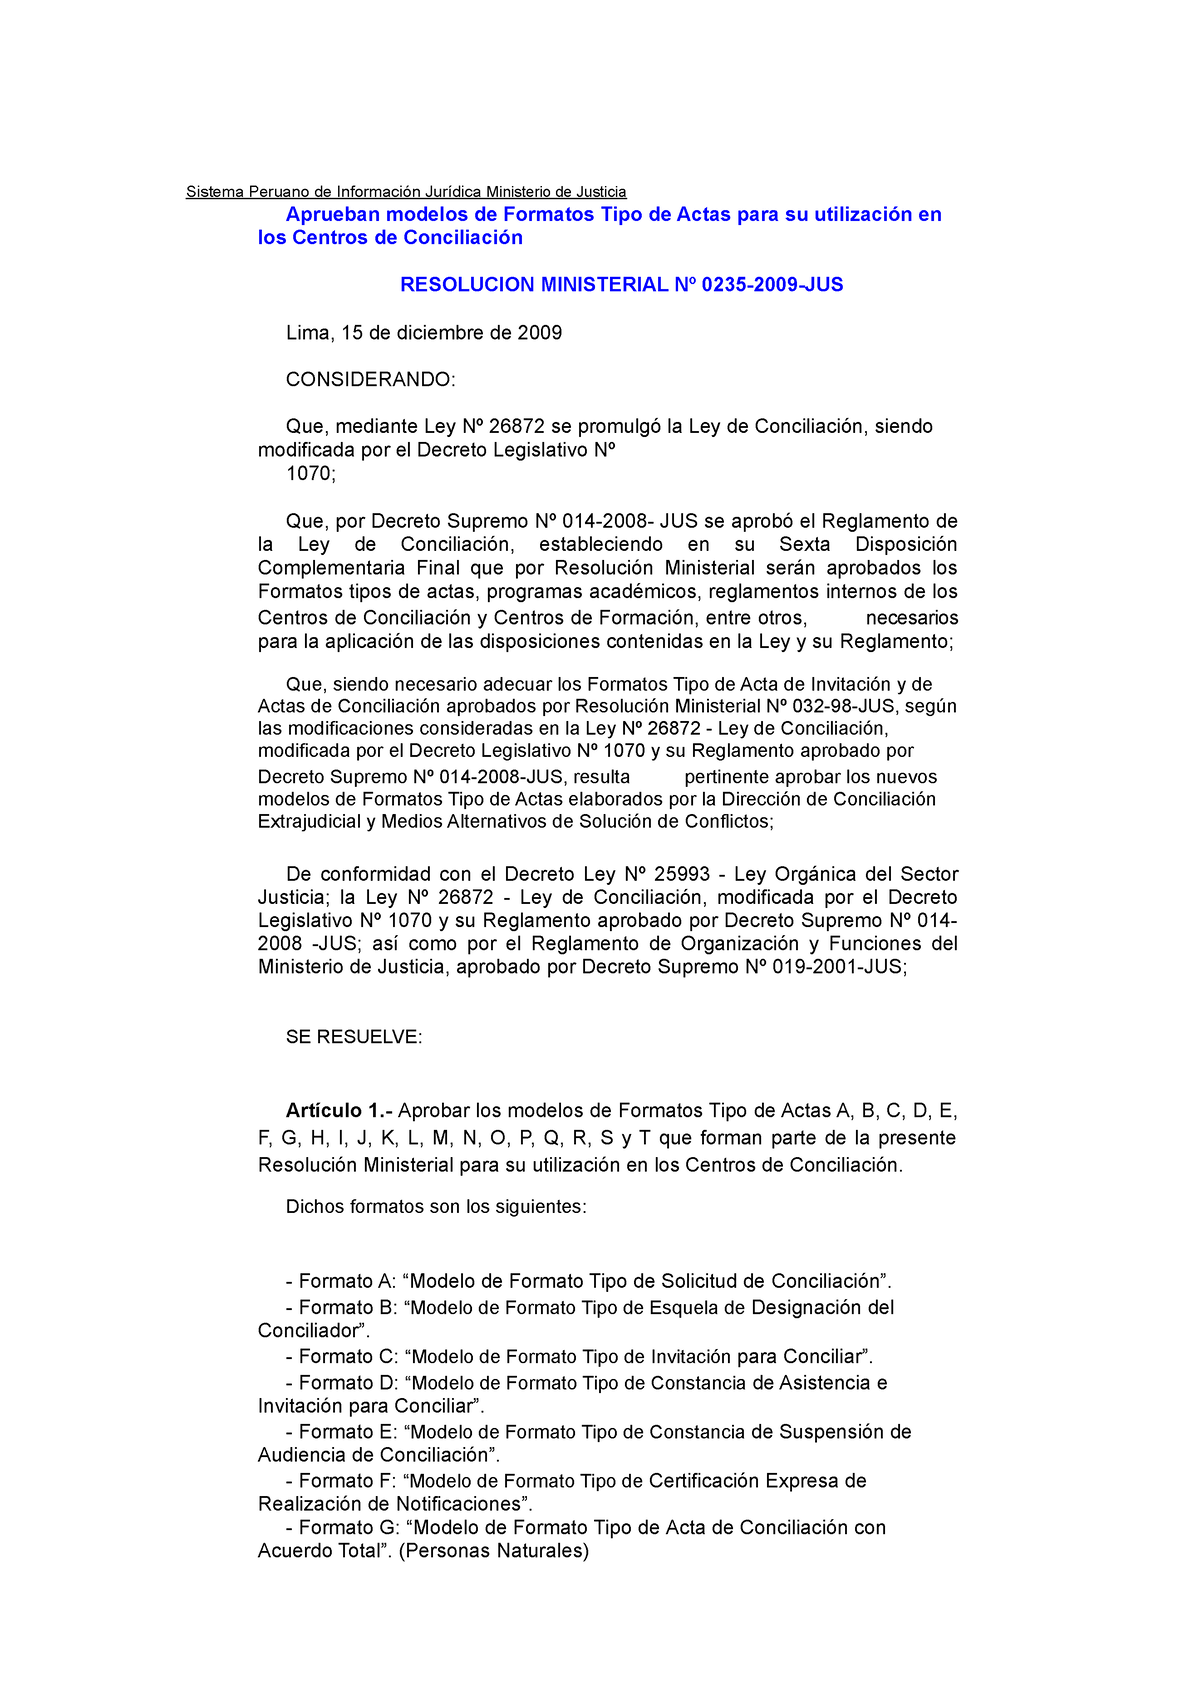 10 Formatos De Actas Aprobado Por Minjus Convertido Sistema Peruano De Información Jurídica 2297